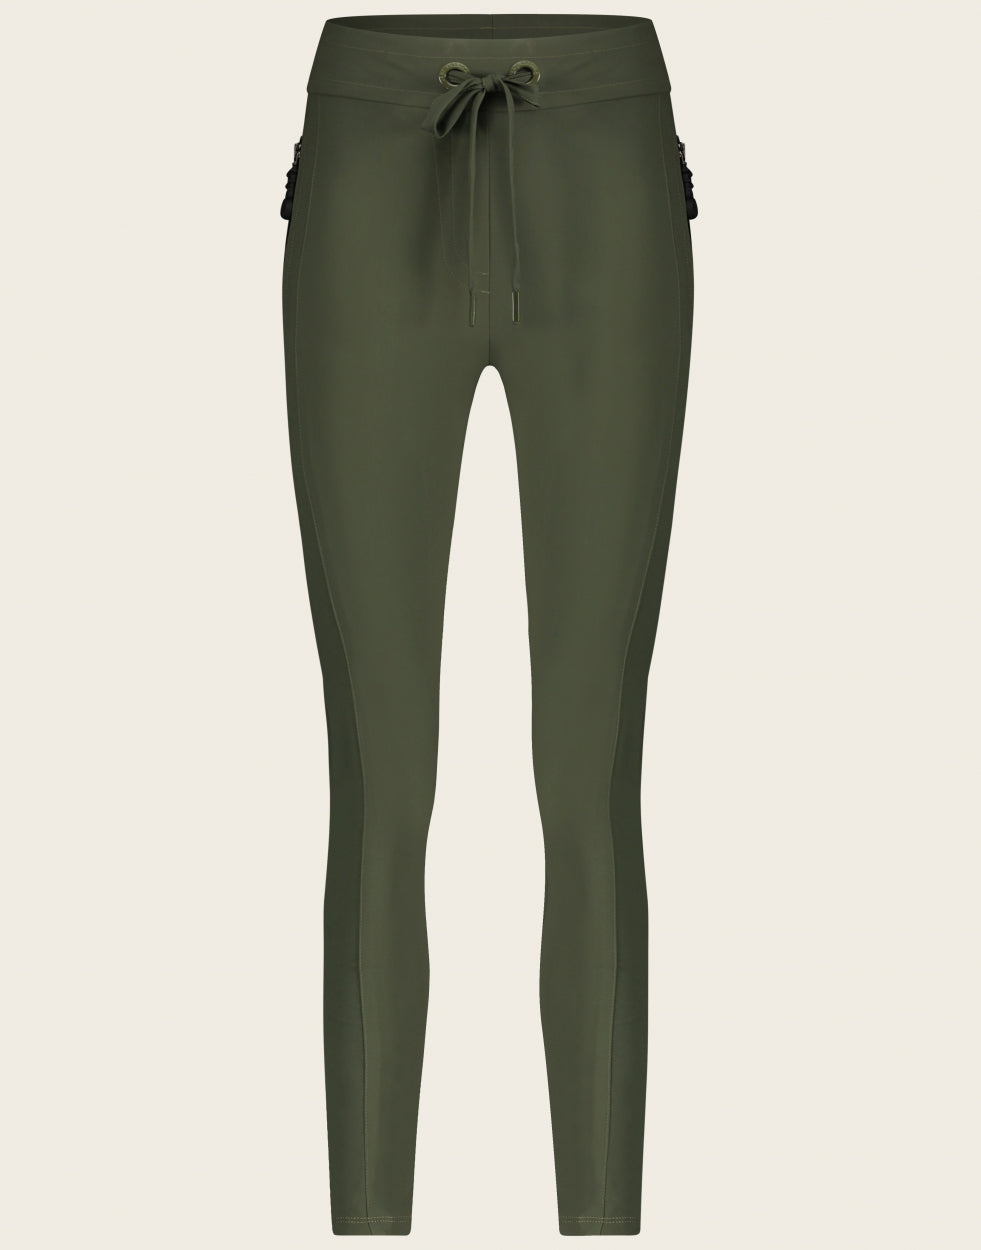 Groene broek in travel kwaliteit. Pants Annabel/2 U2222033Z-2 is een mooie aansluitende lange broek met striksluiting aan de voorkant en een paspelzak op de achterkant. Broek Annabel heeft steekzakken welke gesloten kunnen worden met een gedetailleerde rits. Pants Annabel is verkrijgbaar in de kleuren: Blue, Army.